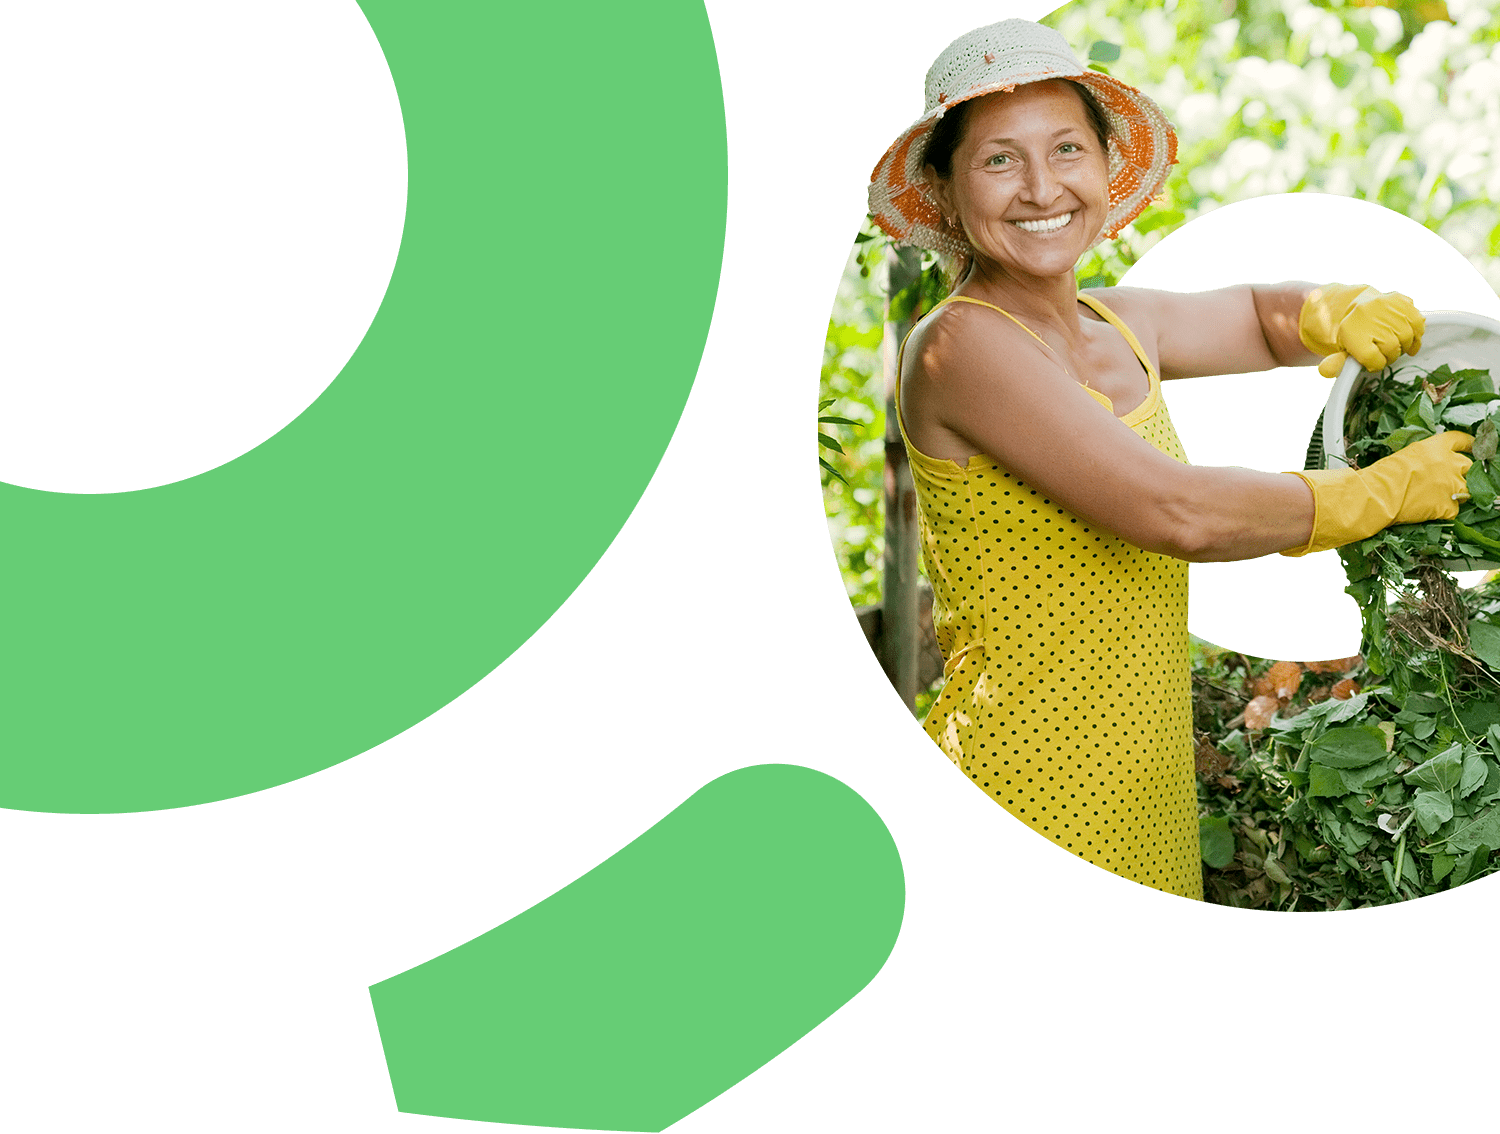 Mujer sonriendo con un balde con hojas verdes y las está depositando para compostar.